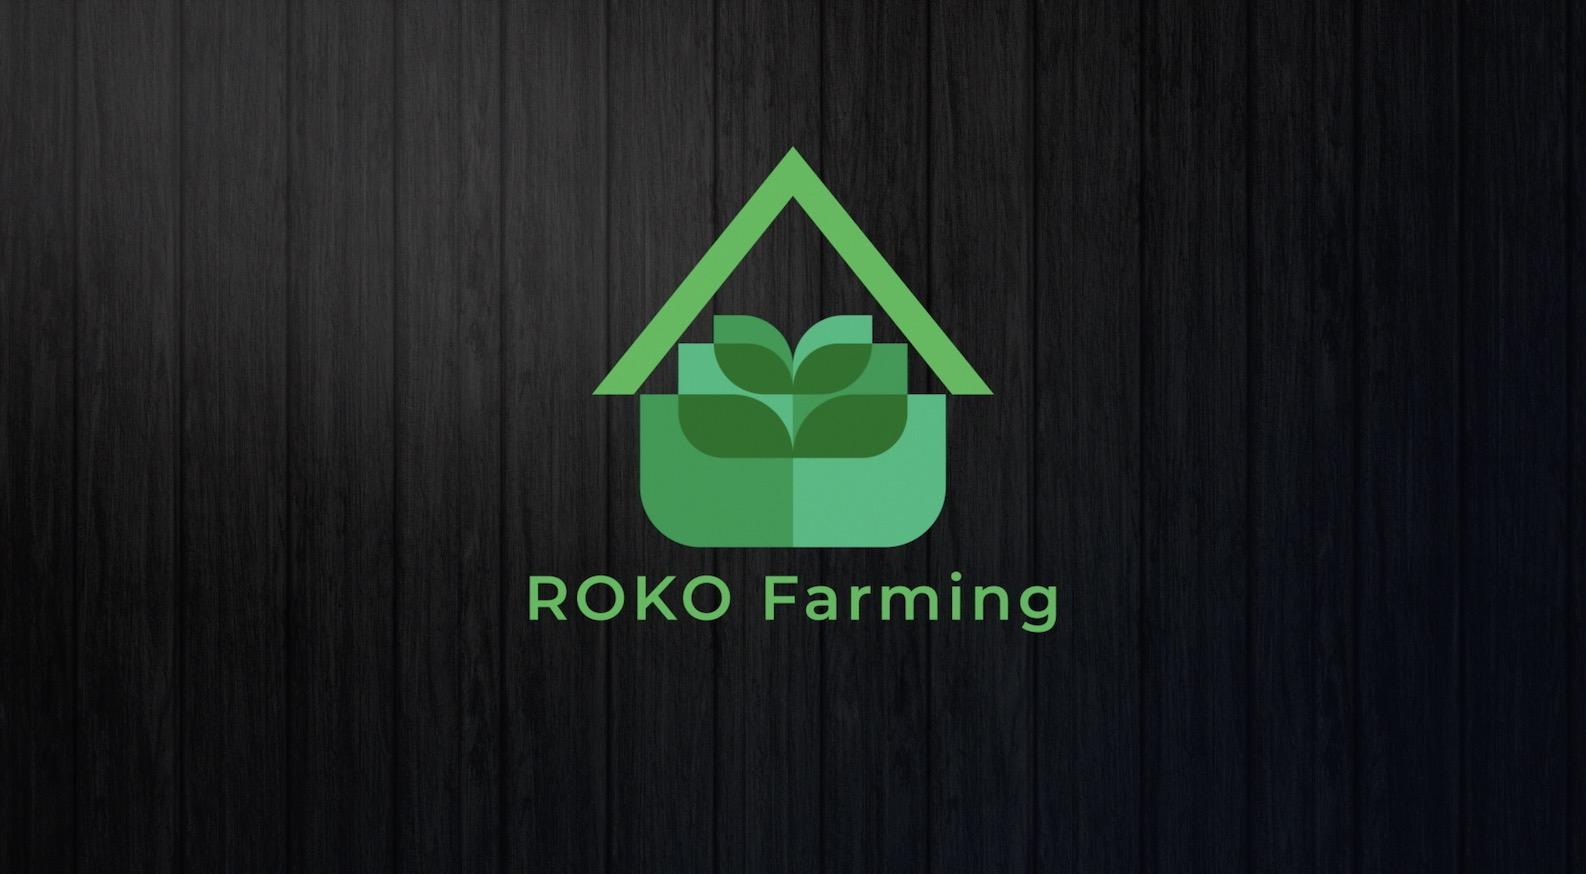 ROKO Farming / startup von Ulm / Background